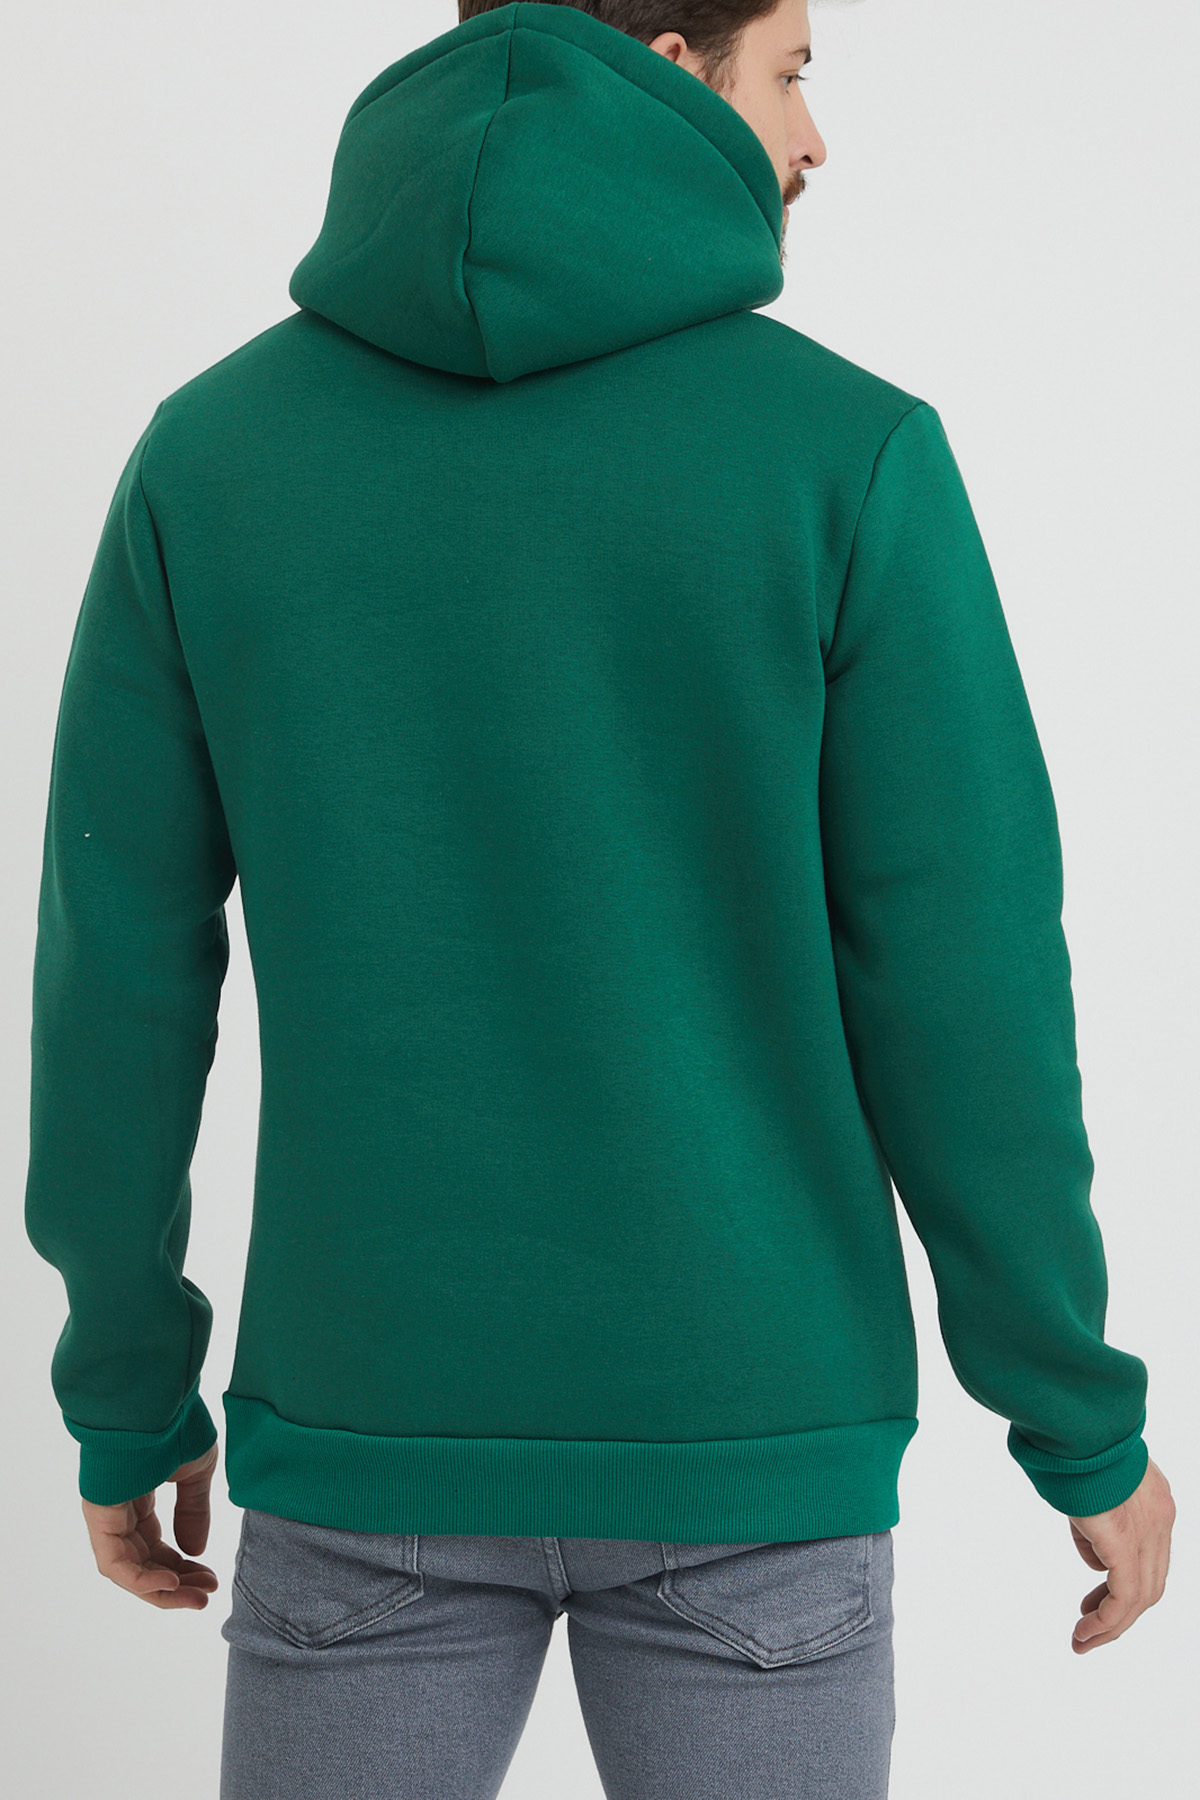 Yeşil Baskılı Sweatshirt 1KXE8-44365-08 - 7